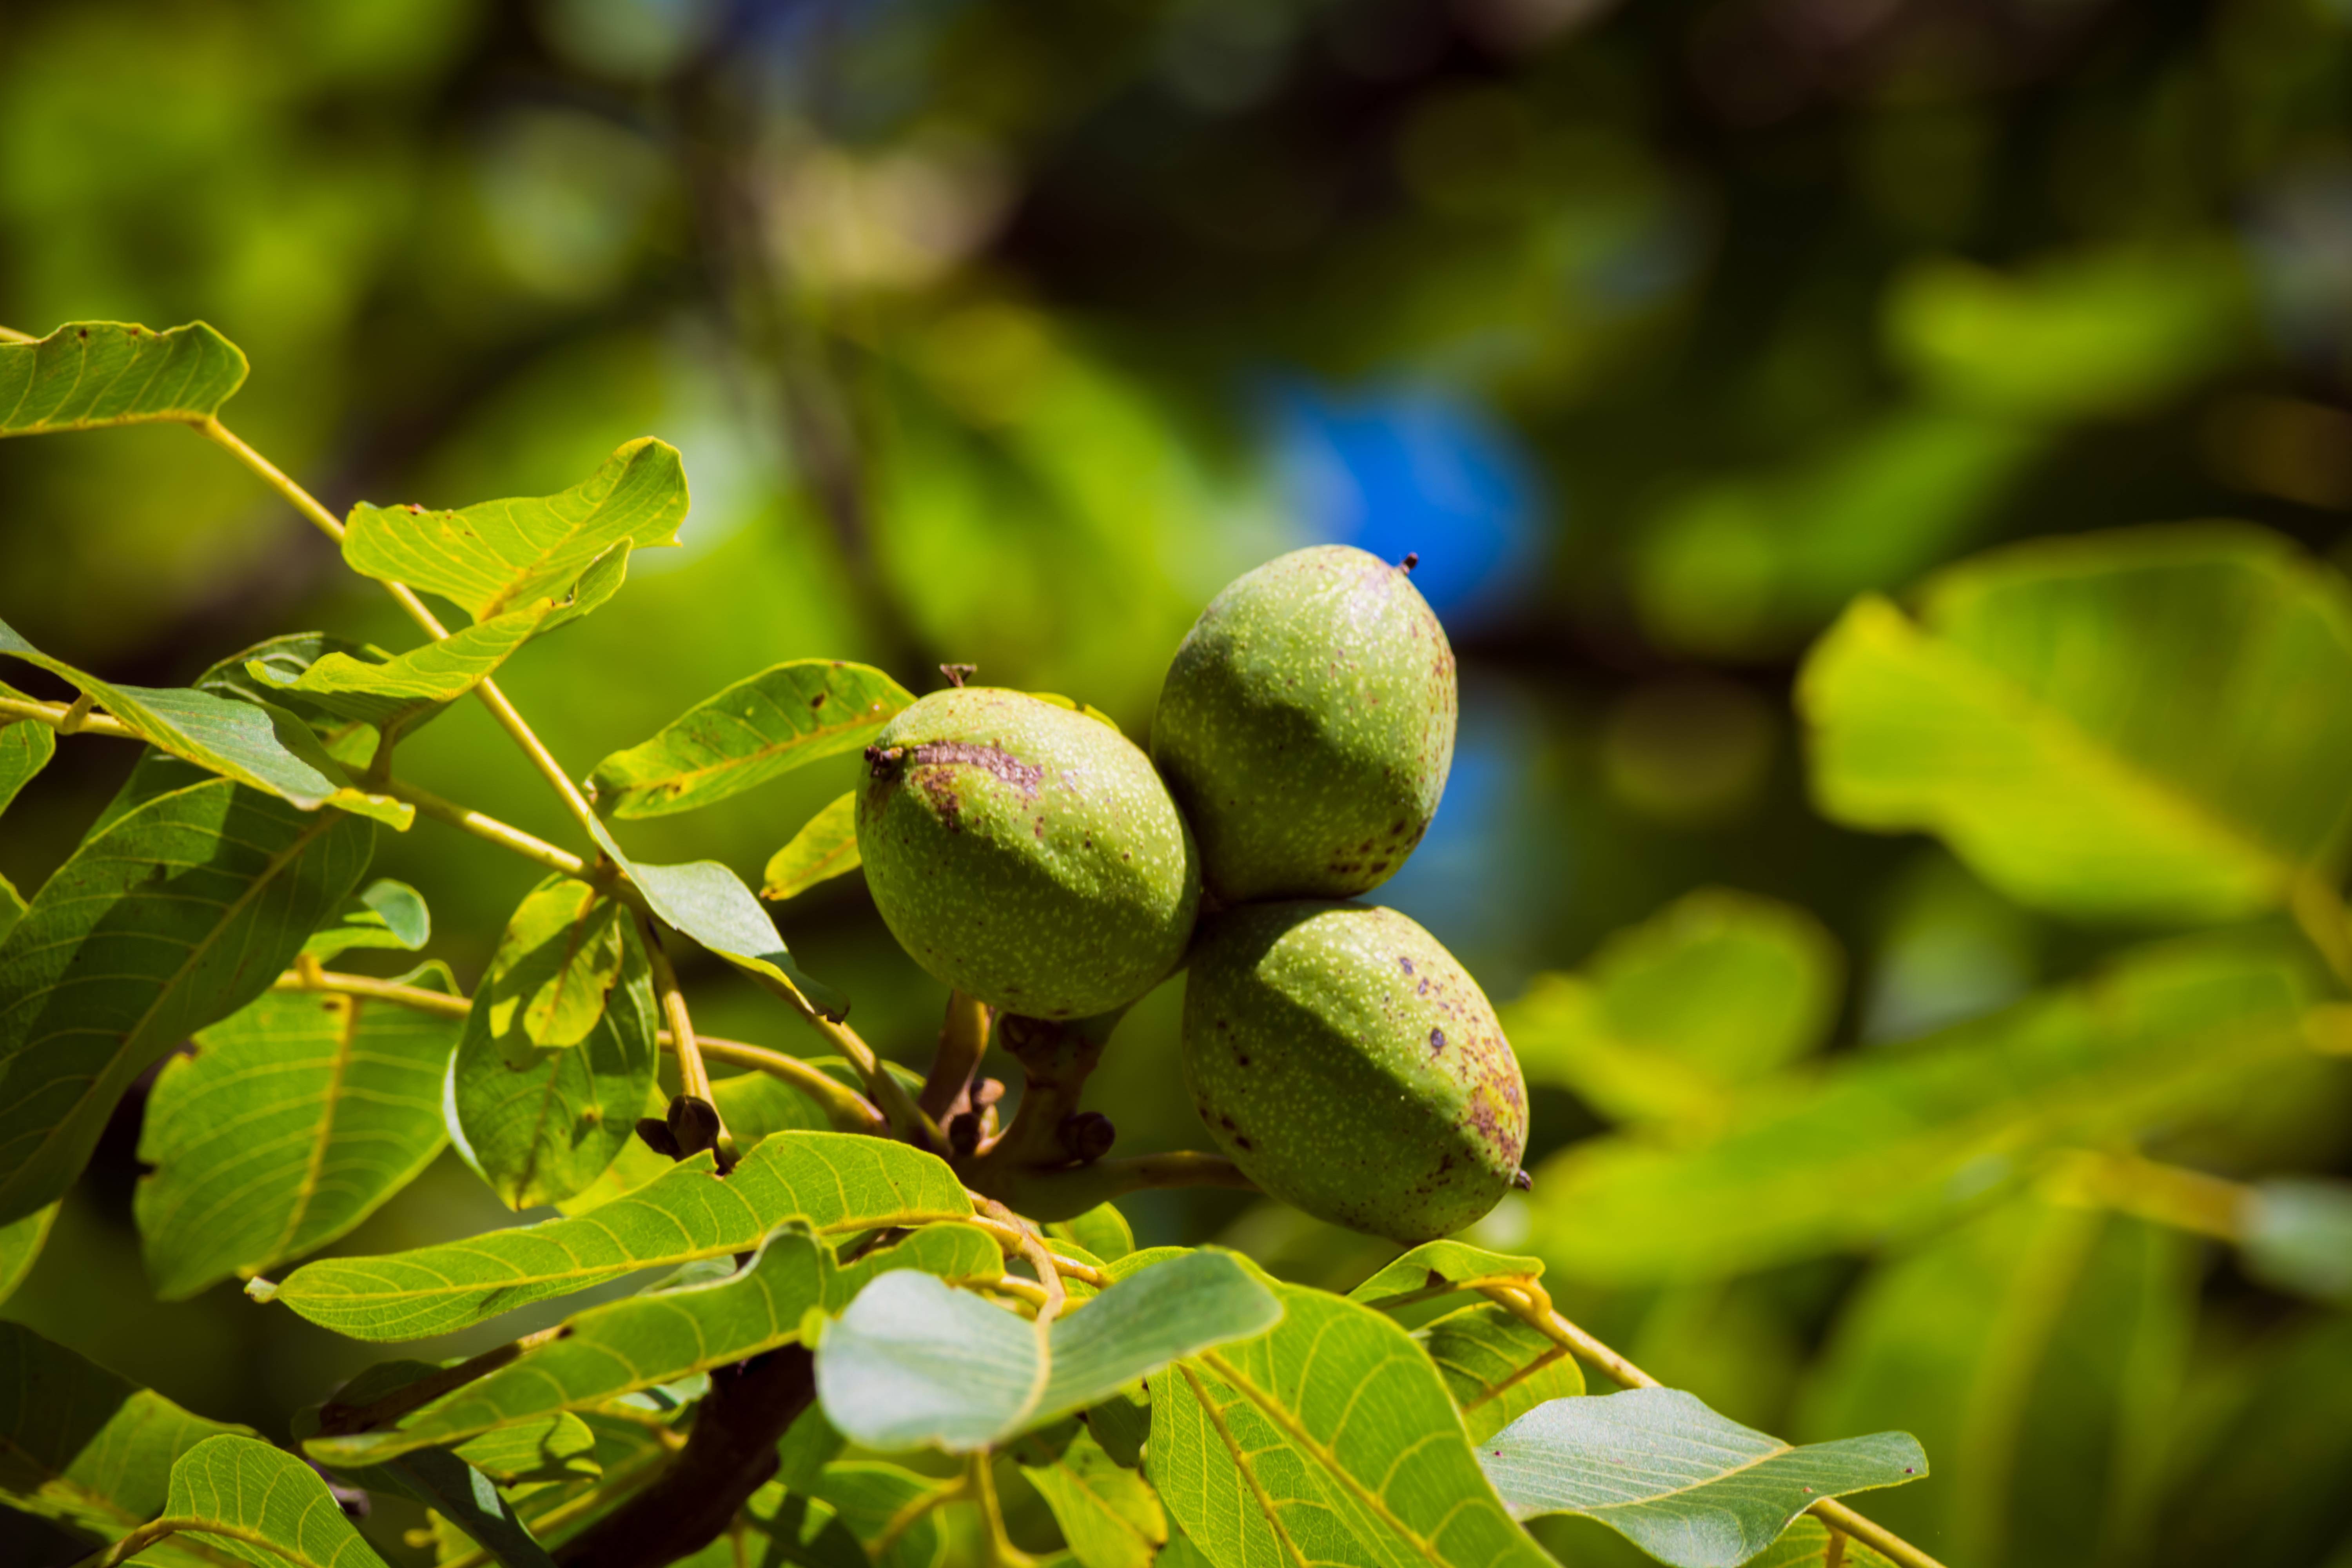 Дерево грецкий орех – как посадить и ухаживать, возможные заболевания и проблемы